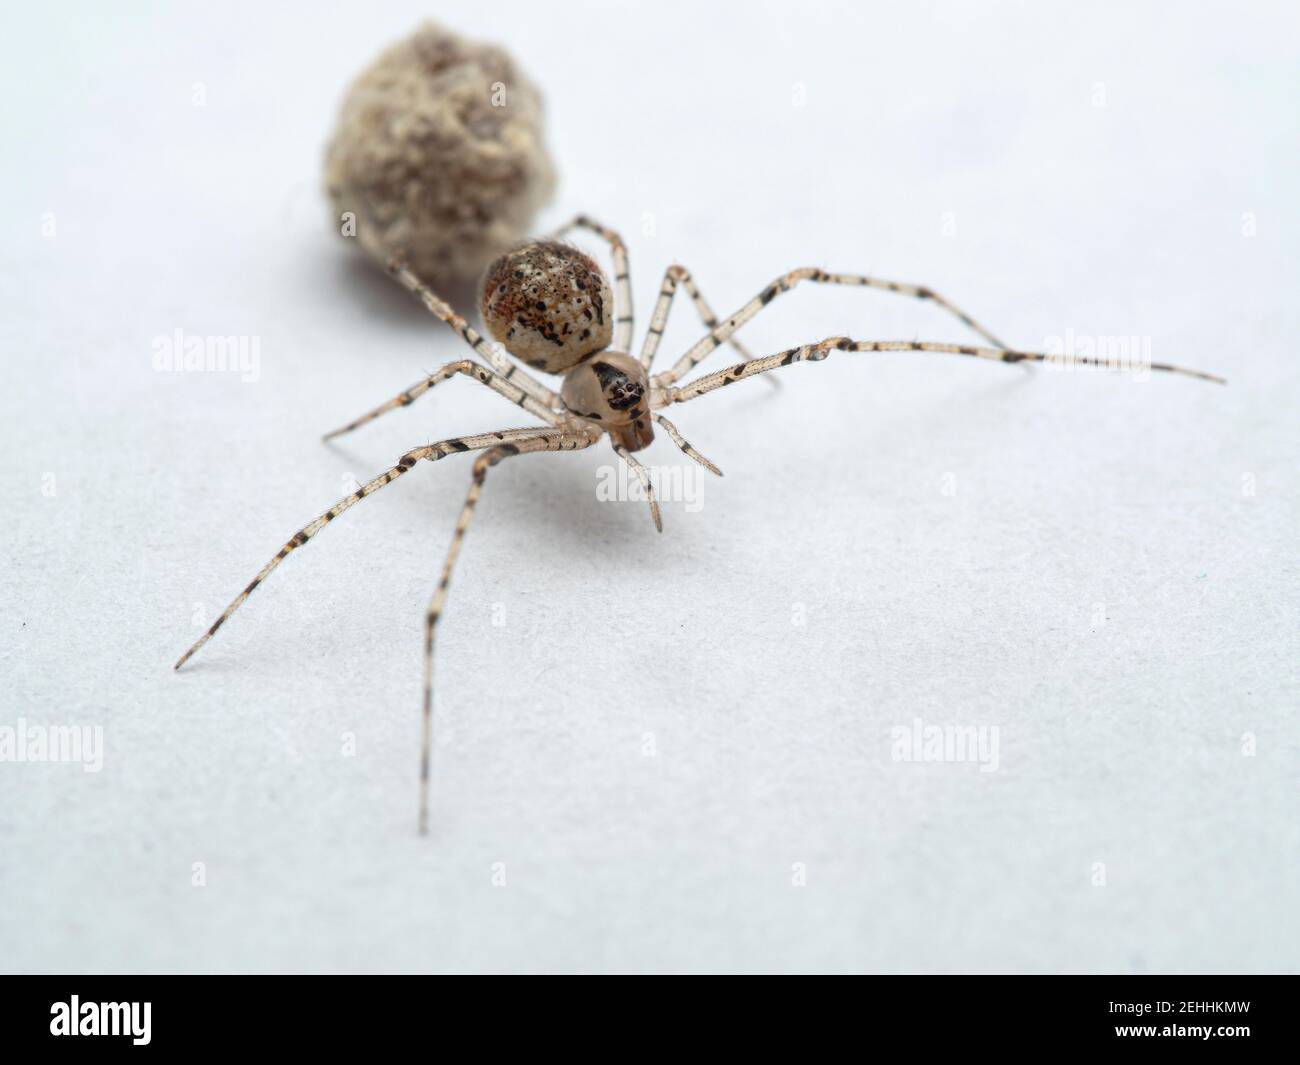 Araña pequeña y atractiva de tela de araña femenina, especie Theridiidae, sobre una mesa blanca que protege su saco de huevo. Ladner, Delta, Columbia Británica, Canadá. También Foto de stock